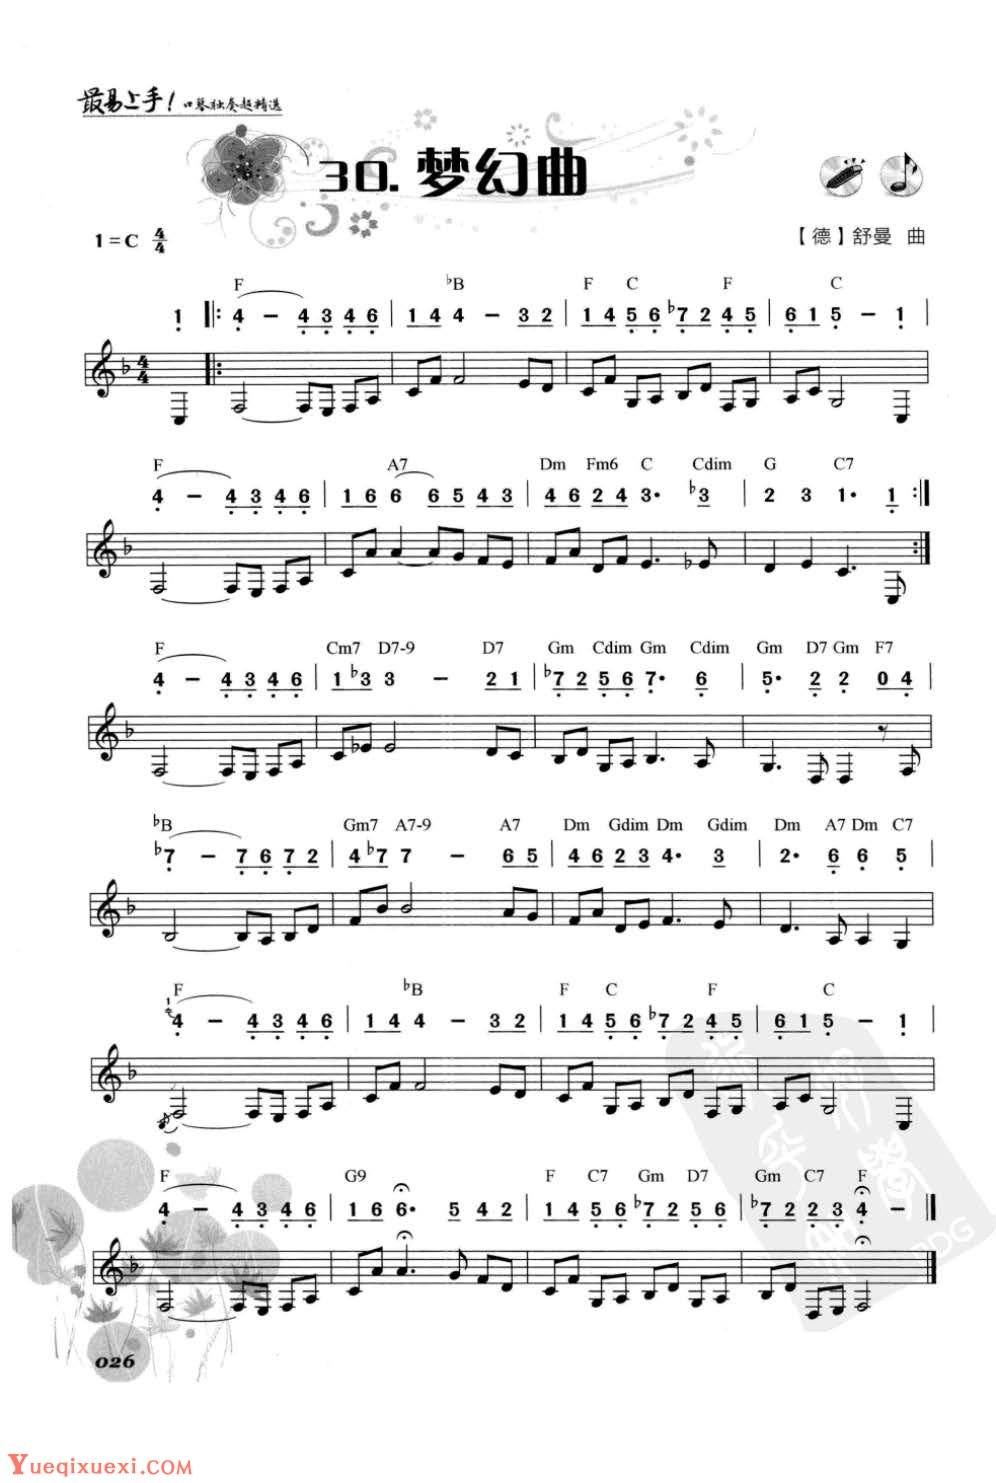 口琴古典名曲《梦幻曲》简谱与五线谱对照